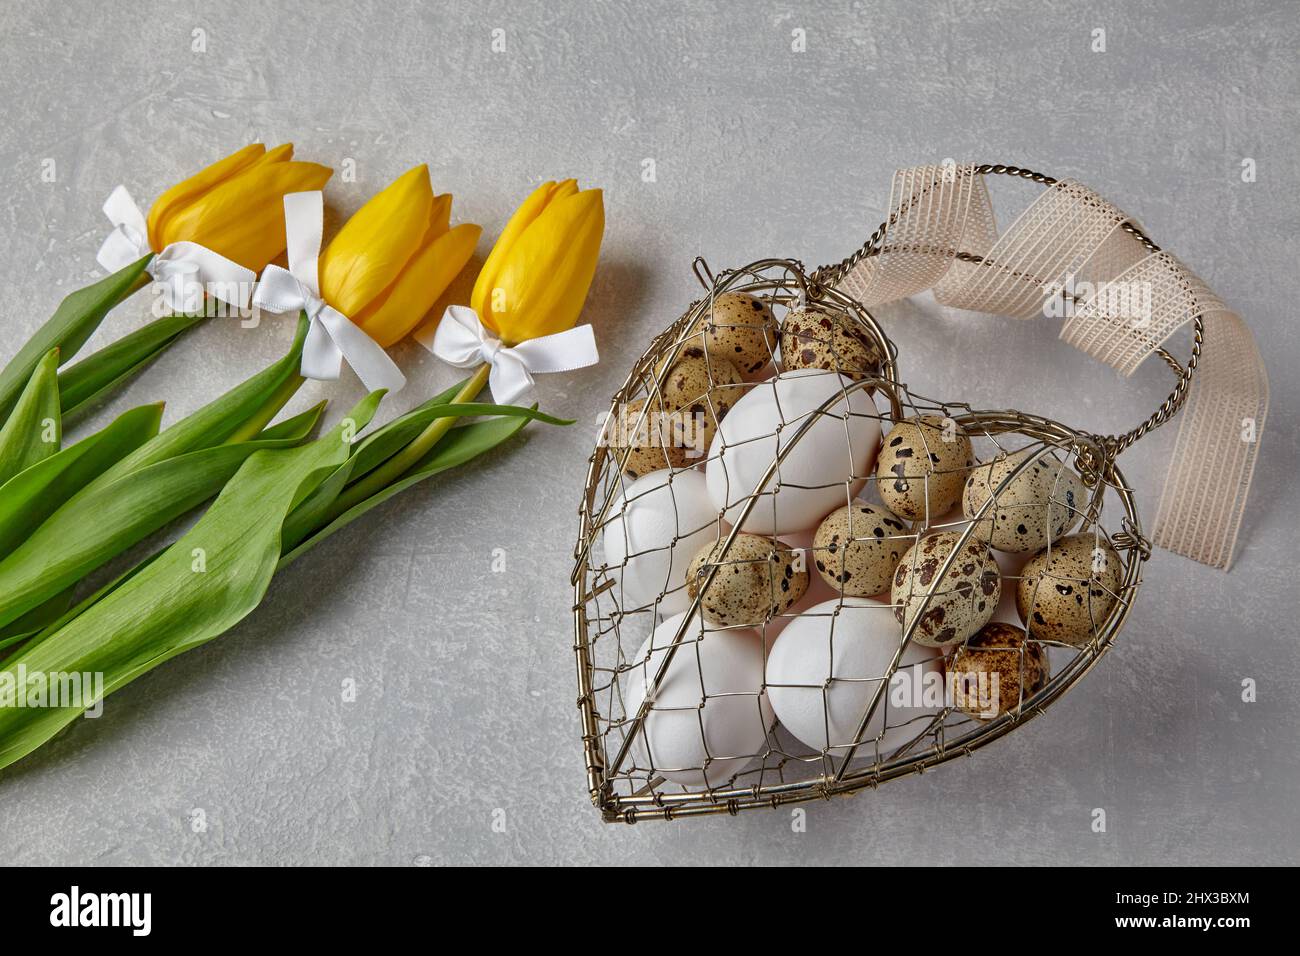 Œufs de poulet et de caille dans une boîte en fil métallique tissé en forme de coeur attachée Banque D'Images